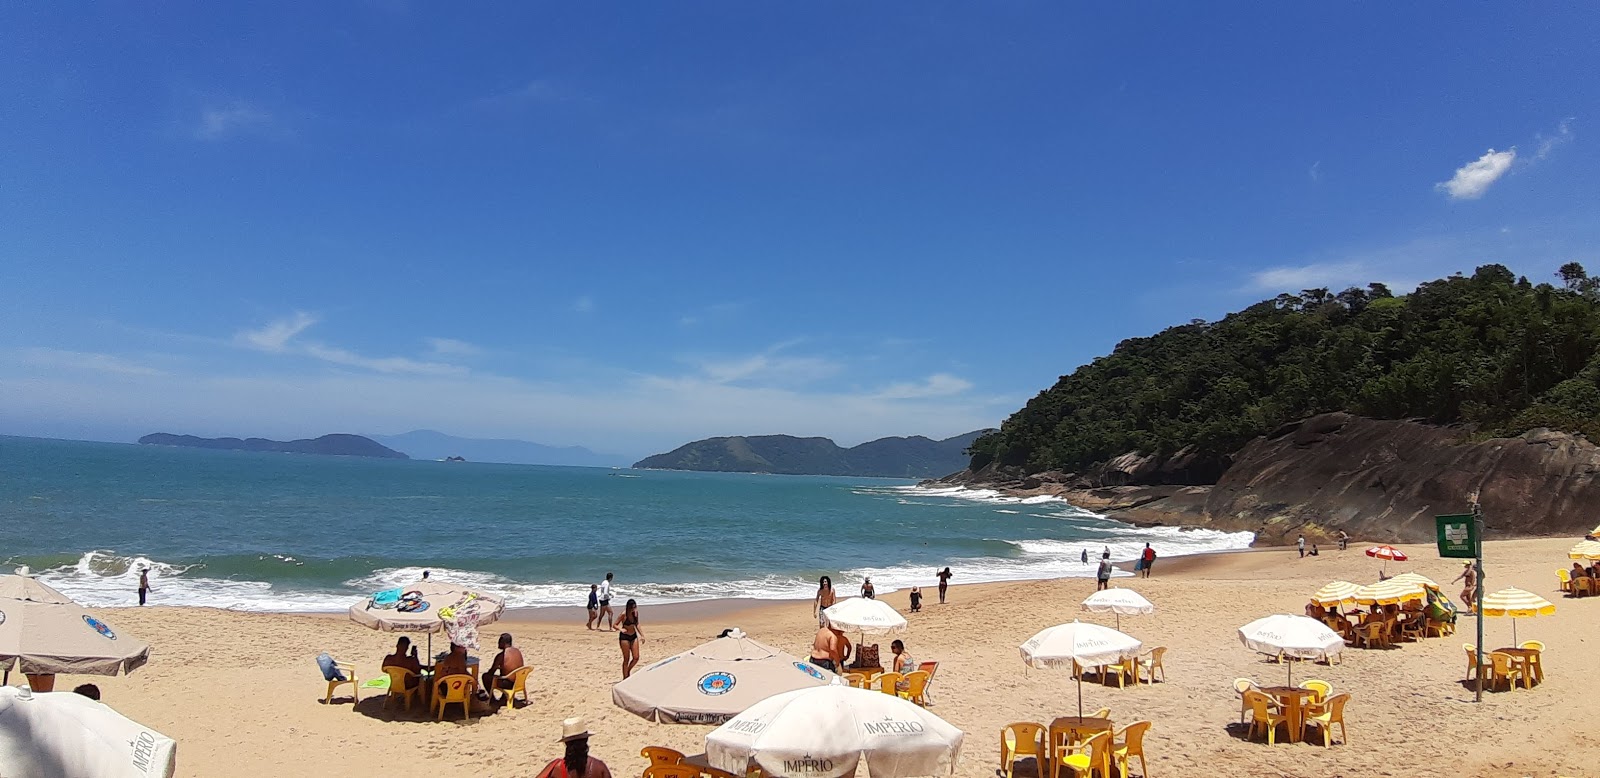 Praia da Sununga'in fotoğrafı çok temiz temizlik seviyesi ile